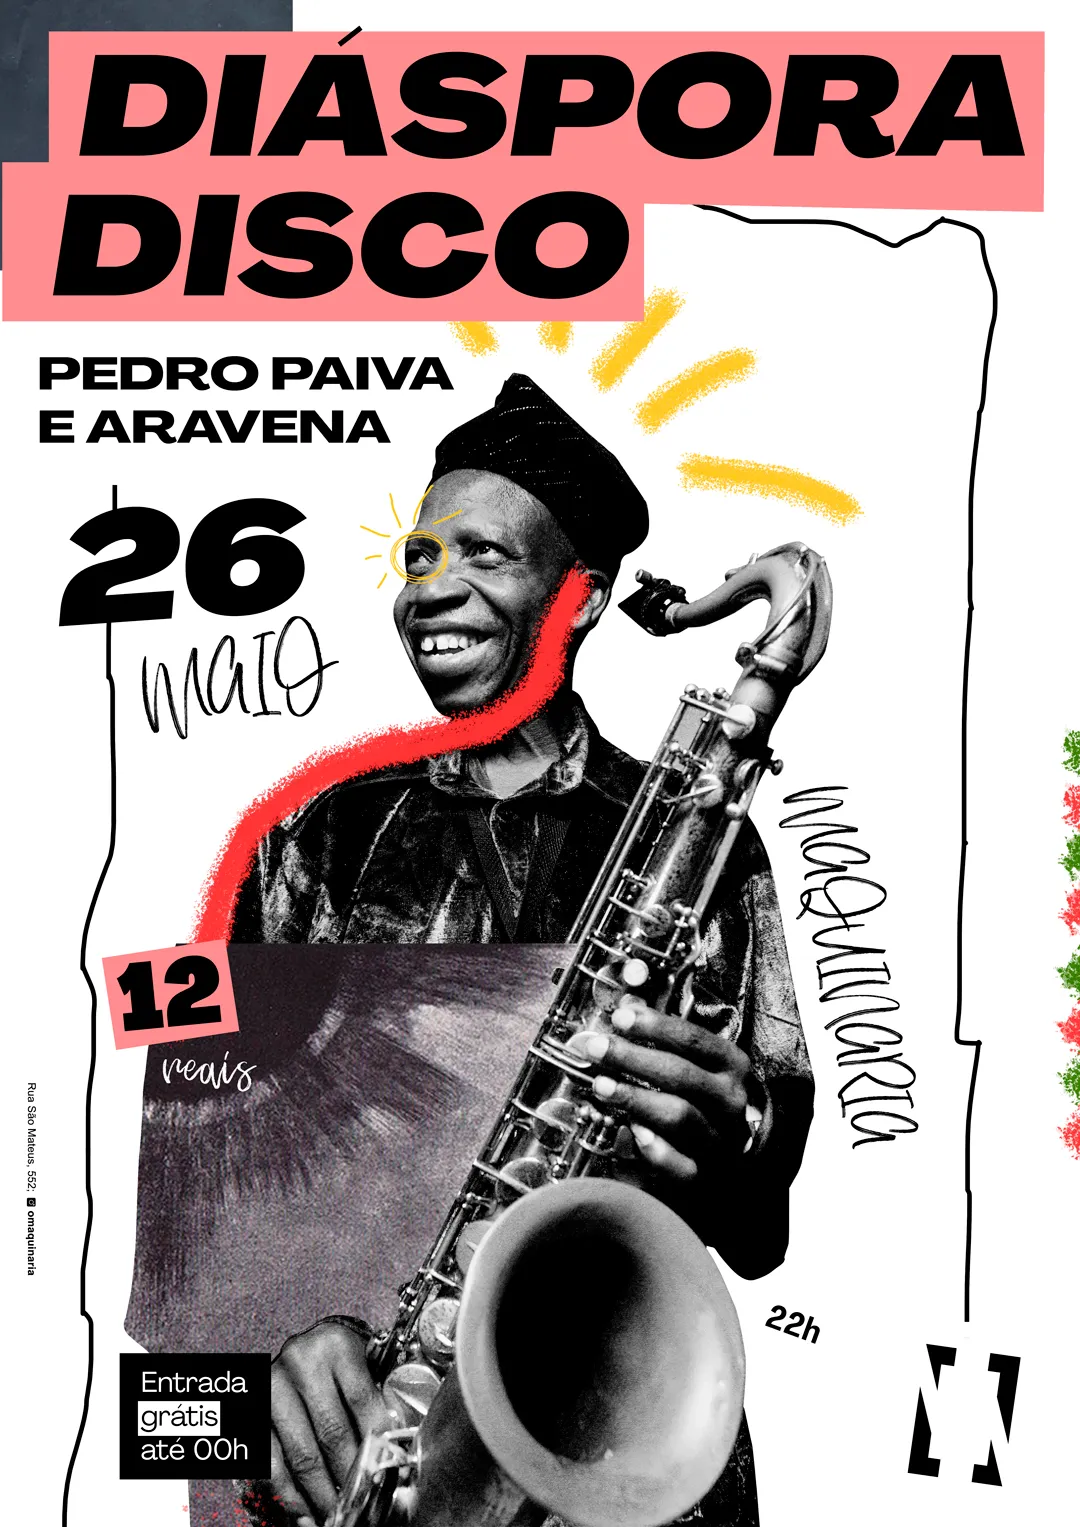 Cartaz branco com colagem de Orlando Julius, famoso saxofonista, segurando seu sax. Escrito: Diáspora Disco